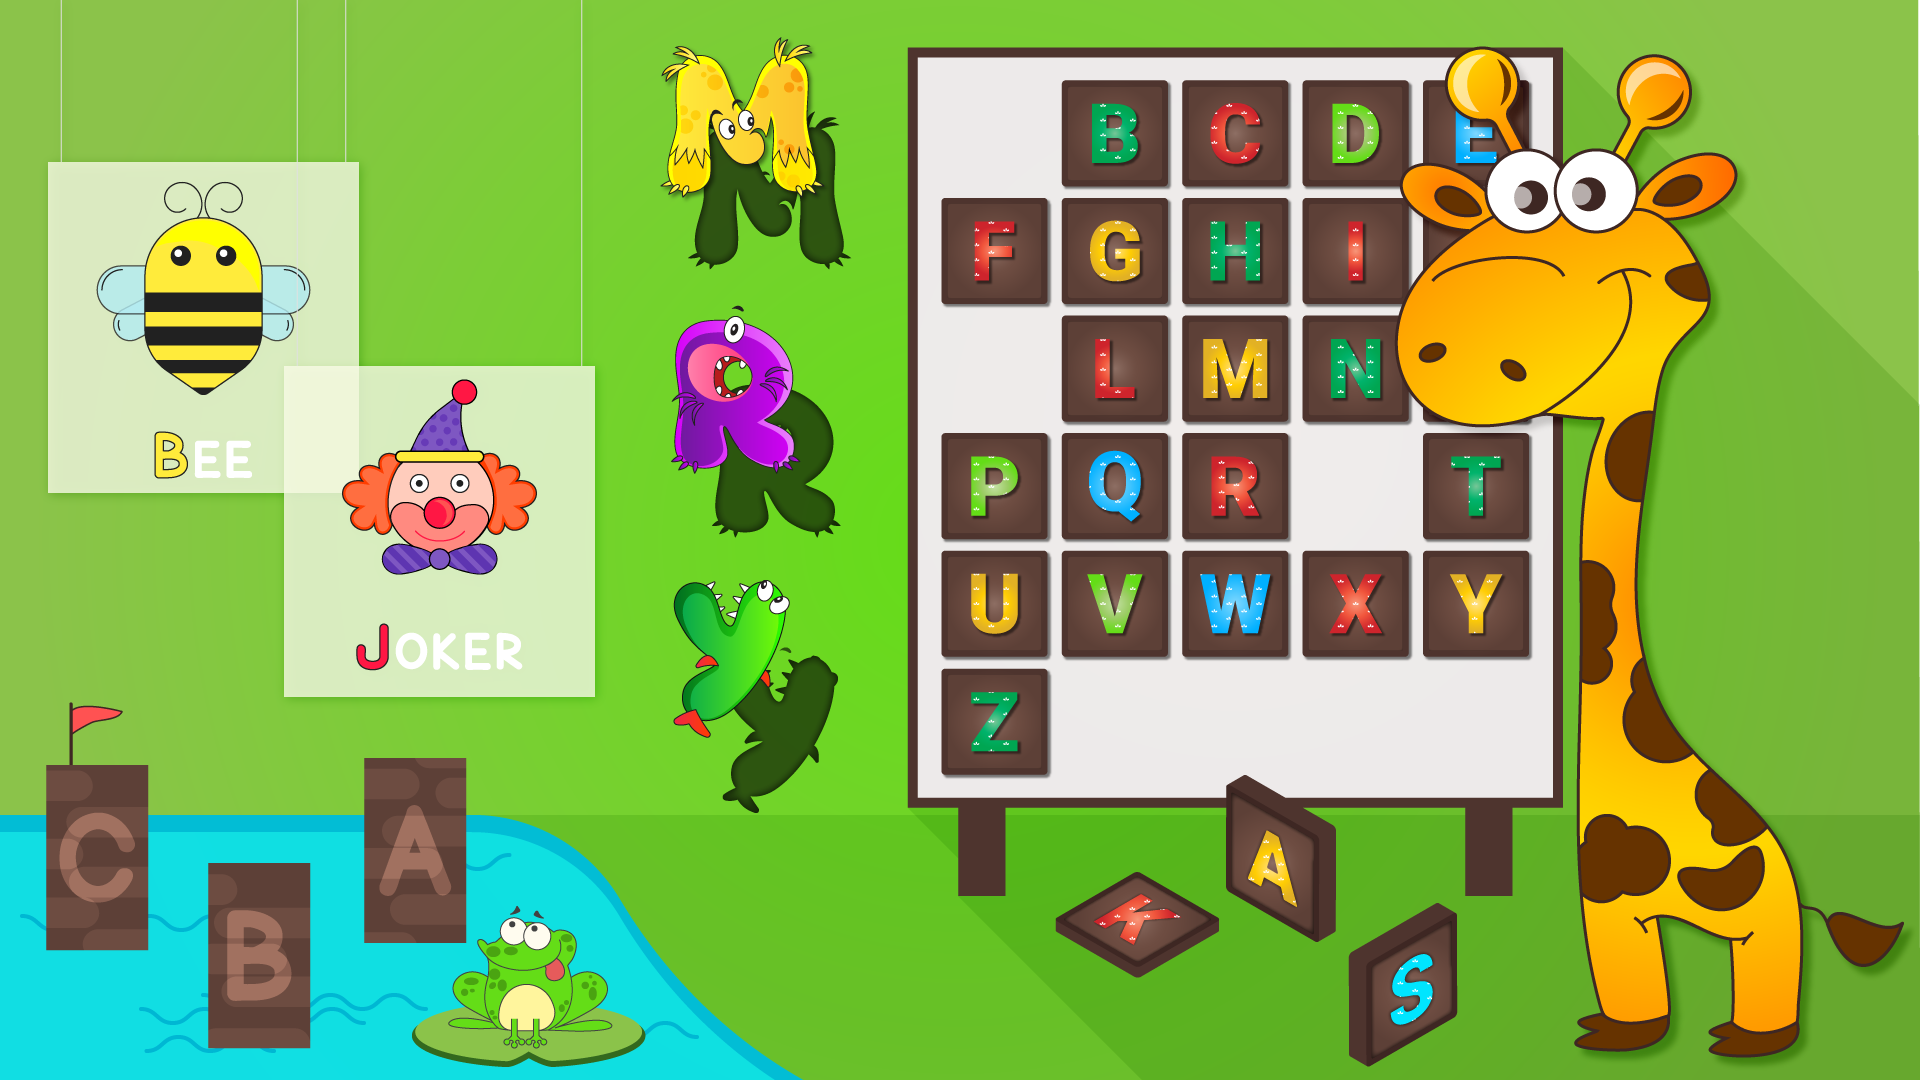 Obter Crianças Aprender Jogos de Palavras - Microsoft Store pt-PT